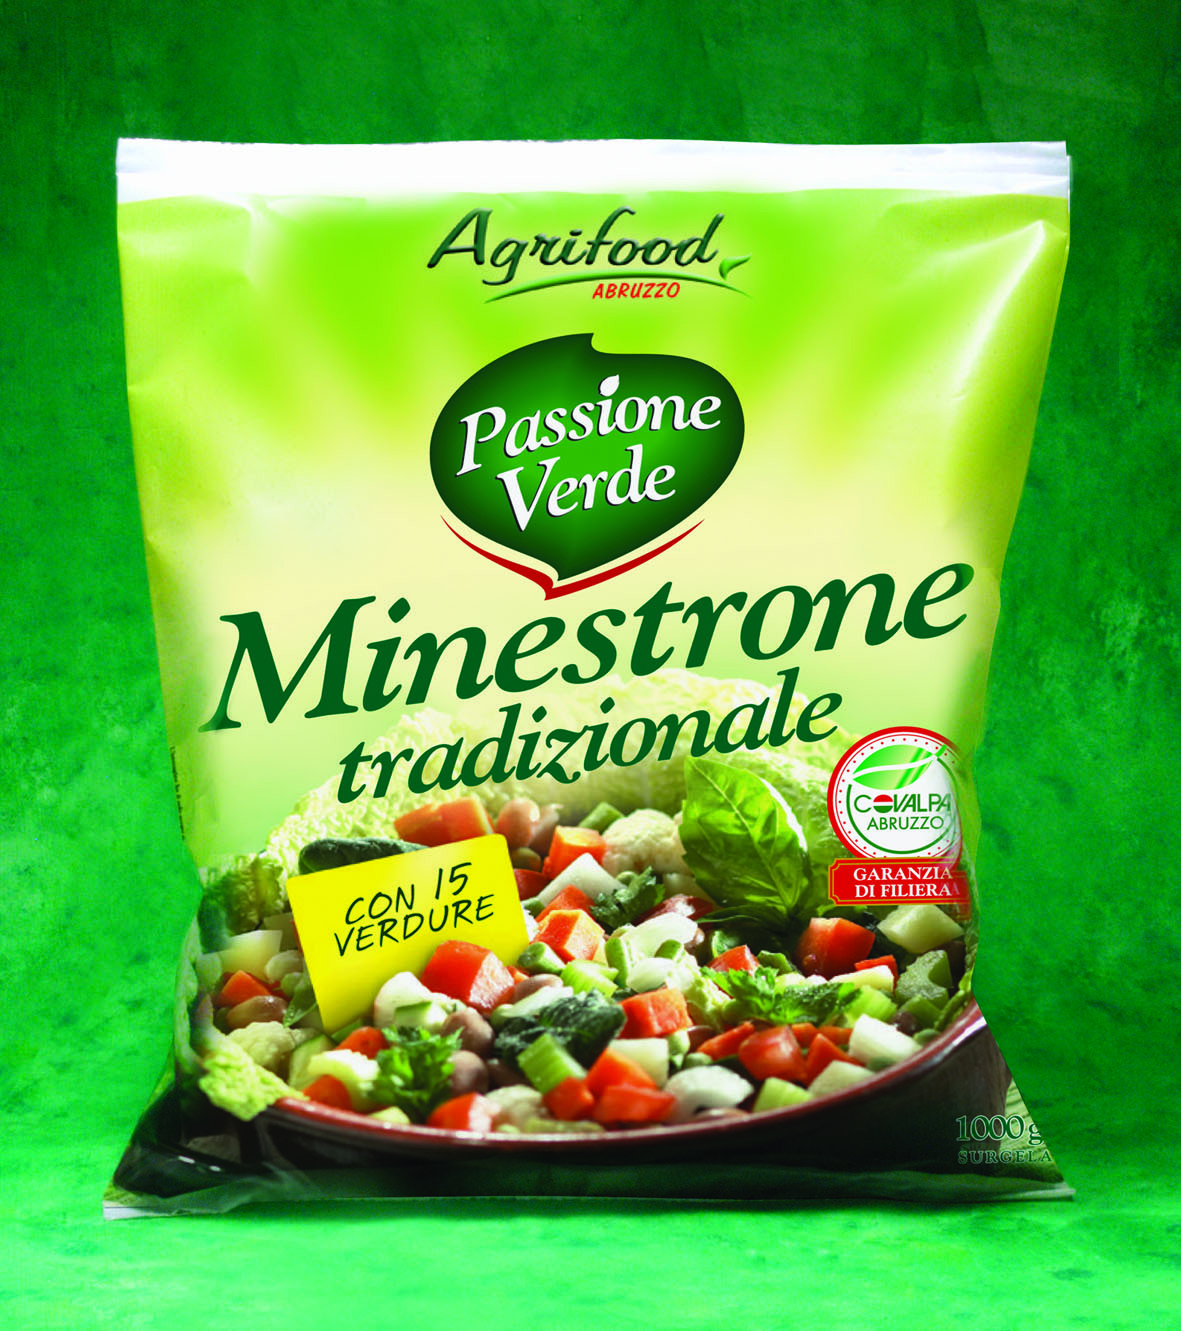  “Passione Verde”, il Minestrone Tradizionale surgelato con carote e patate IGP del Fucino: da Agrifood qualità certificata e tutto il gusto dei prodotti tipici 